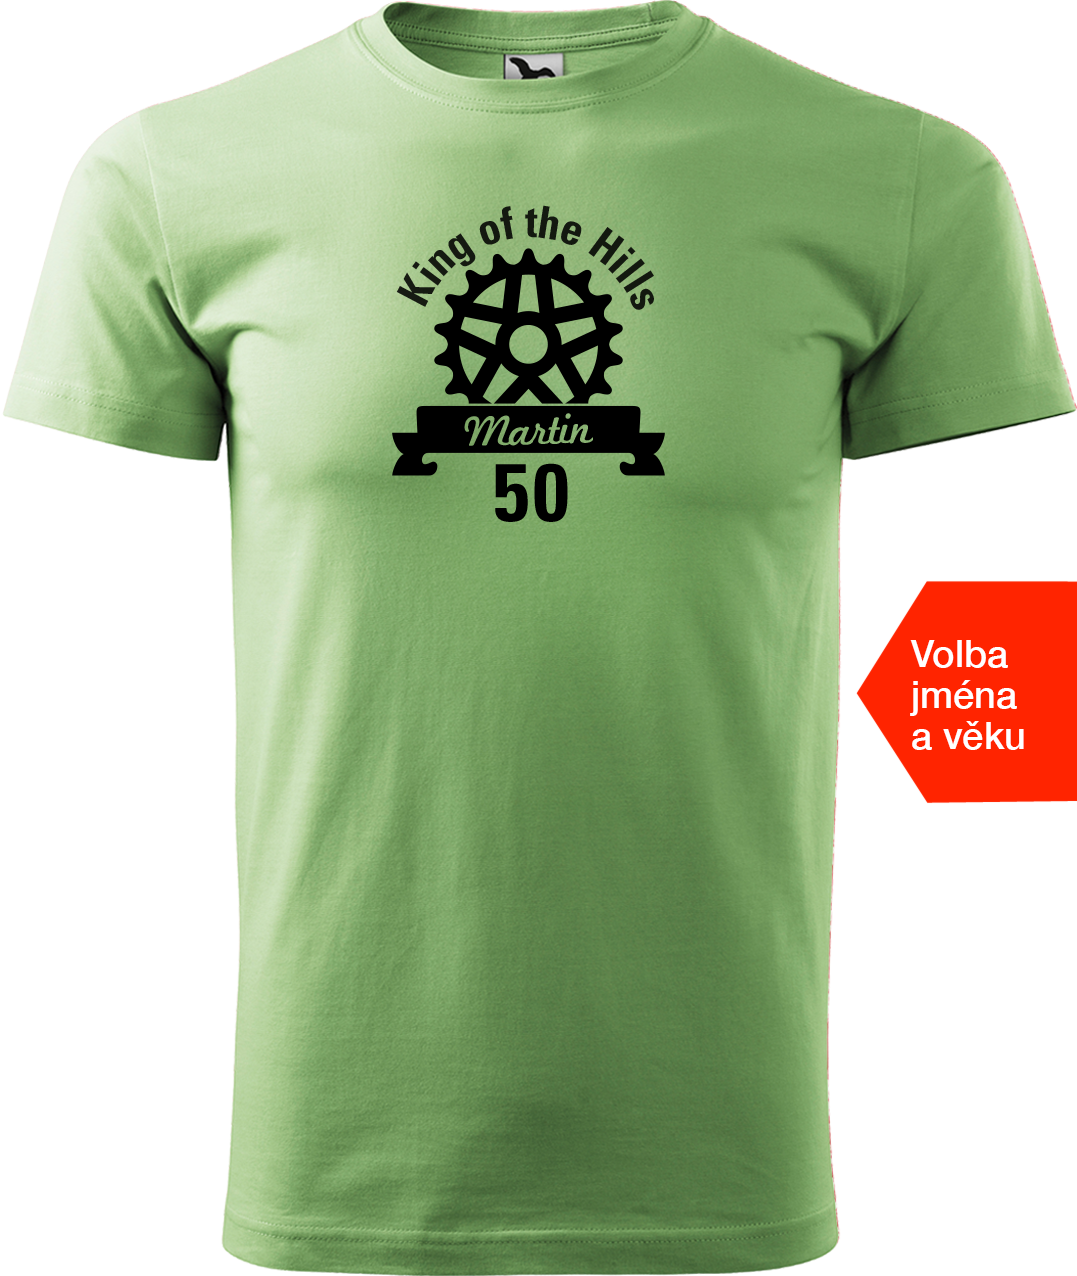 Pánské tričko pro cyklistu se jménem - King of the Hills Velikost: S, Barva: Trávově zelená (39)